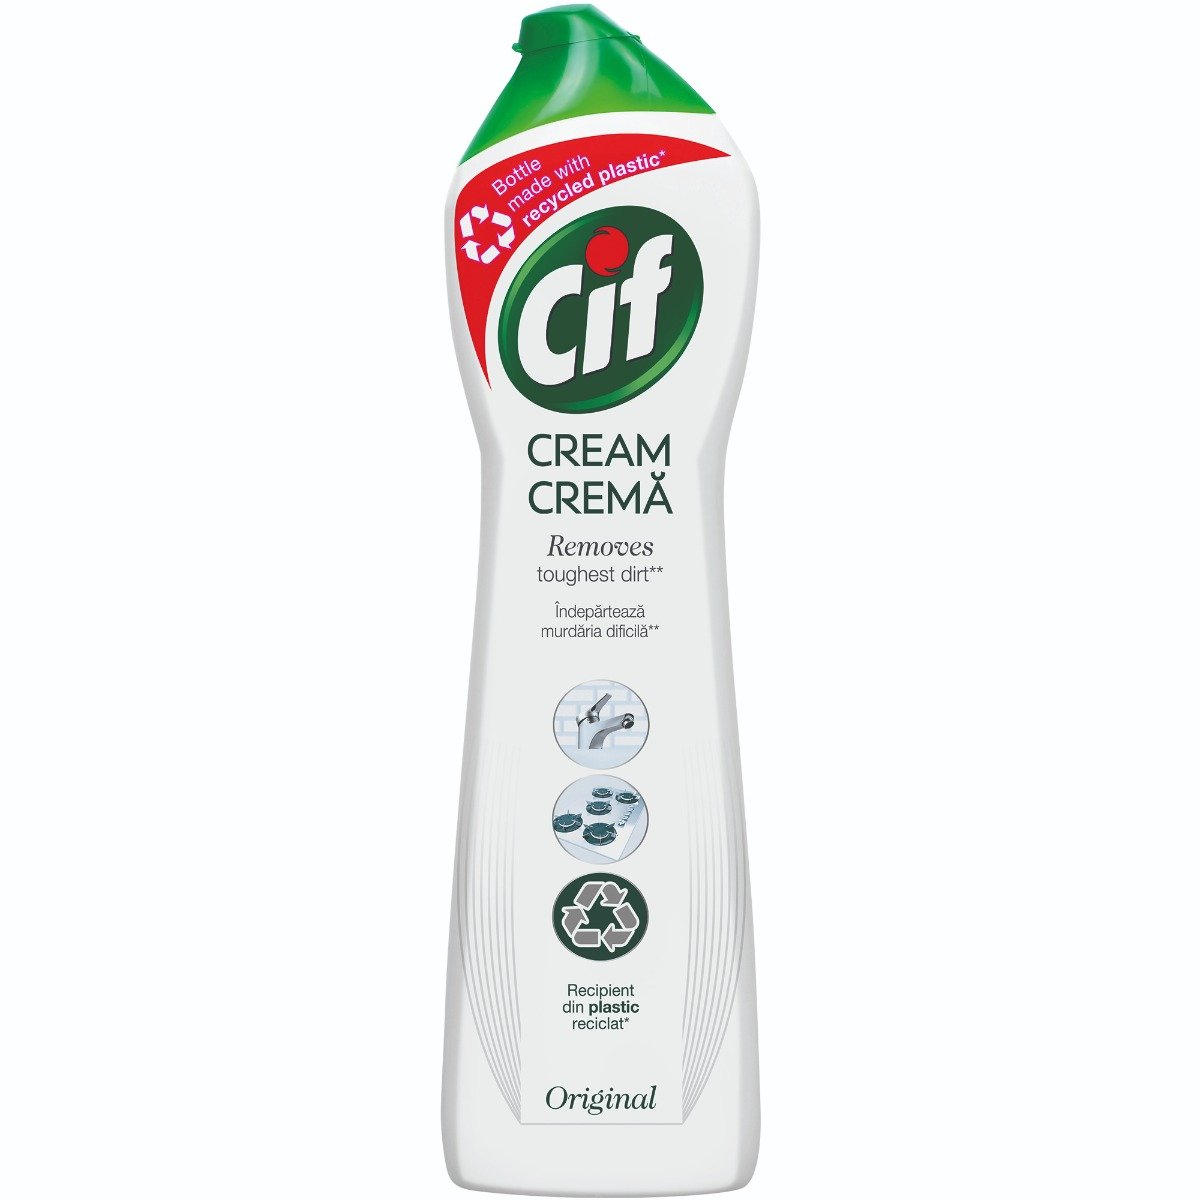 Detergent crema Cif Original, 500 ml imagine